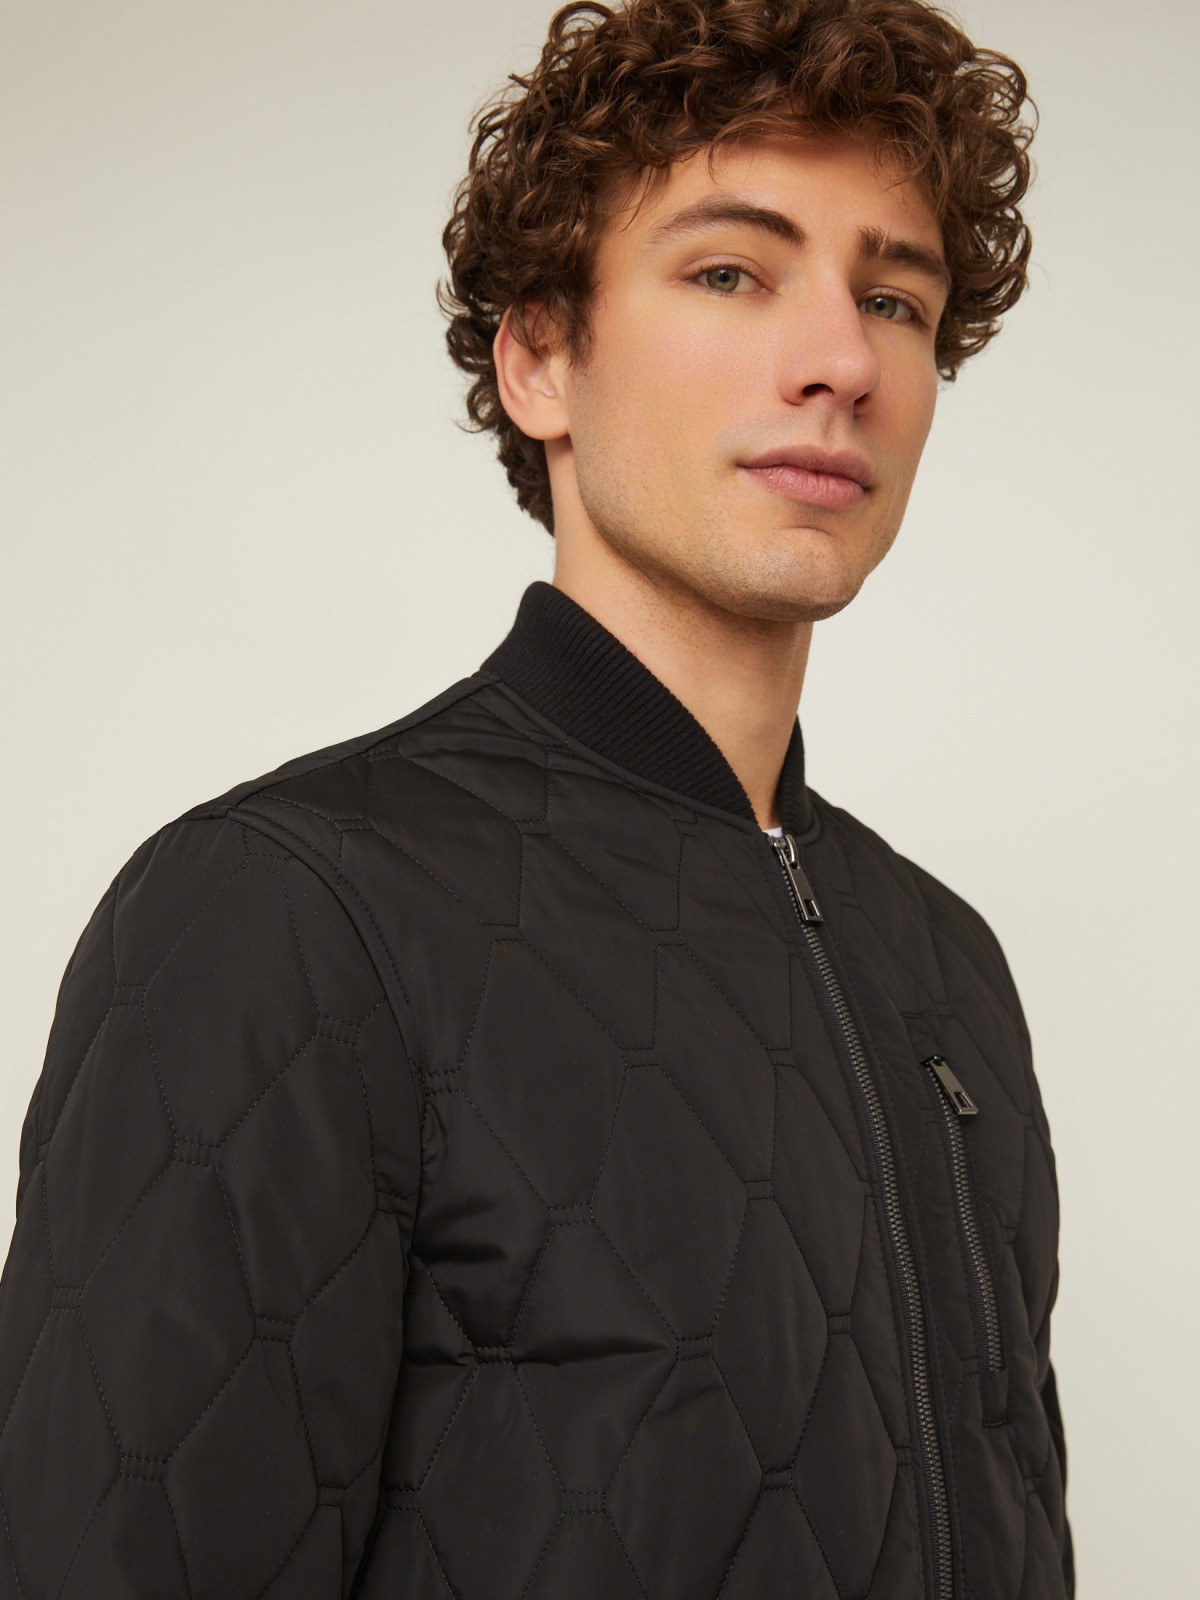 Утеплённая стёганая куртка-бомбер с воротником-стойкой zolla 014135139064, цвет черный, размер M - фото 4